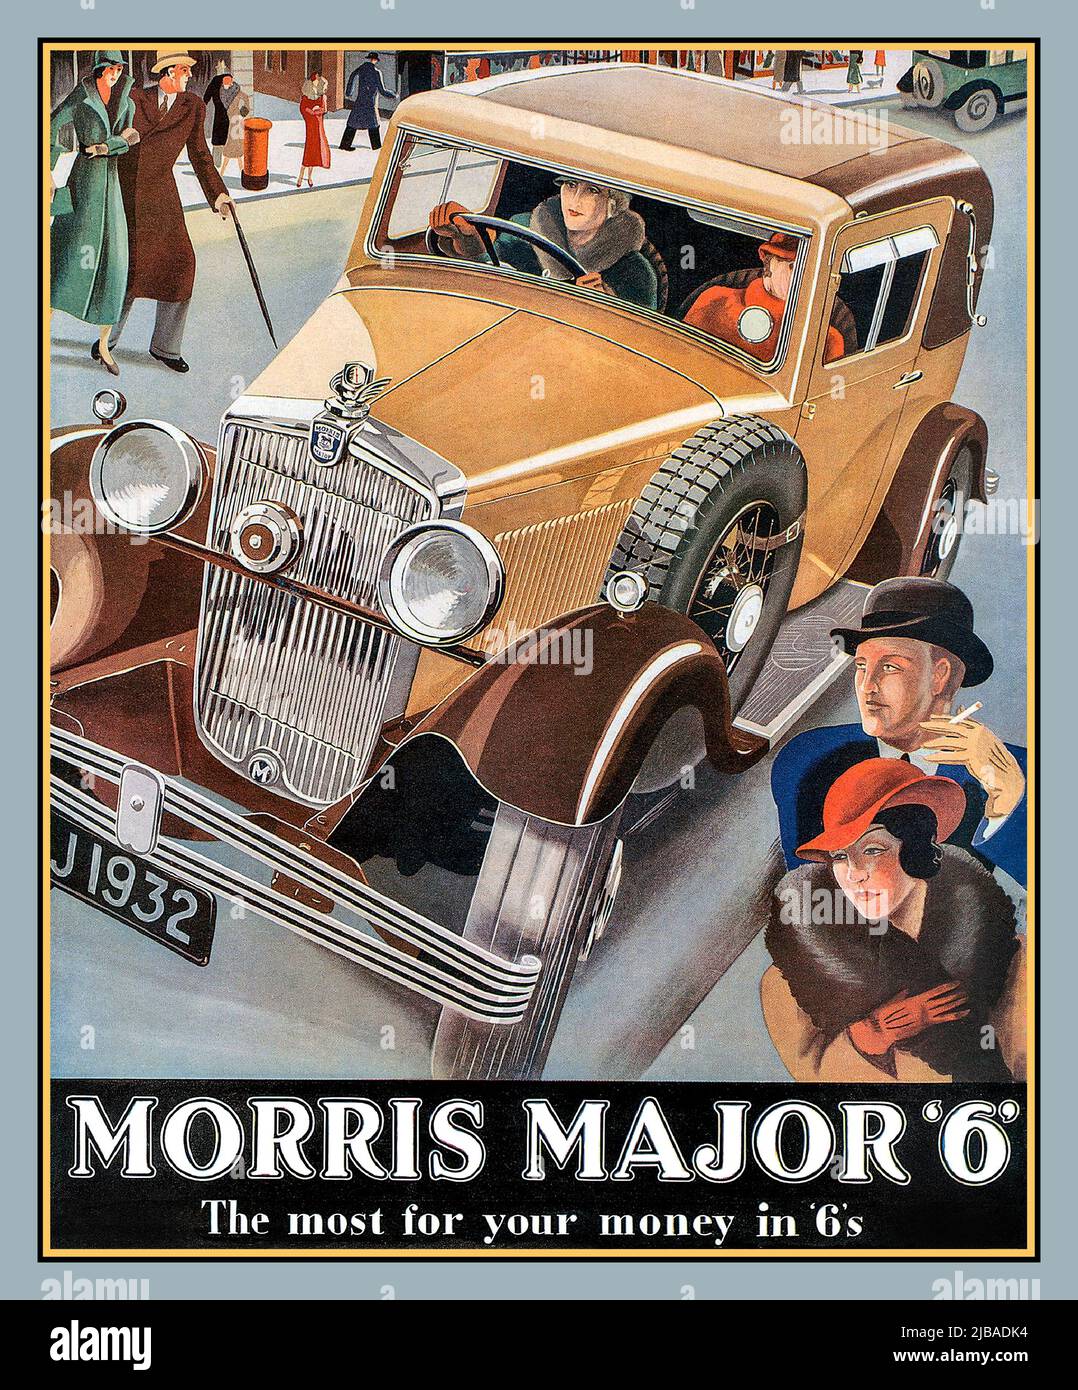 MORRIS 1930s British Motorcar Vintage 1932 Publicité de presse pour le Britannique Morris Major 6 deux portes 'le plus pour votre argent en 6s '1932 Vintage car Poster Morris Major 6 'le plus pour votre argent en 6s' British Made Morris 2 portes coupé motocar. Banque D'Images